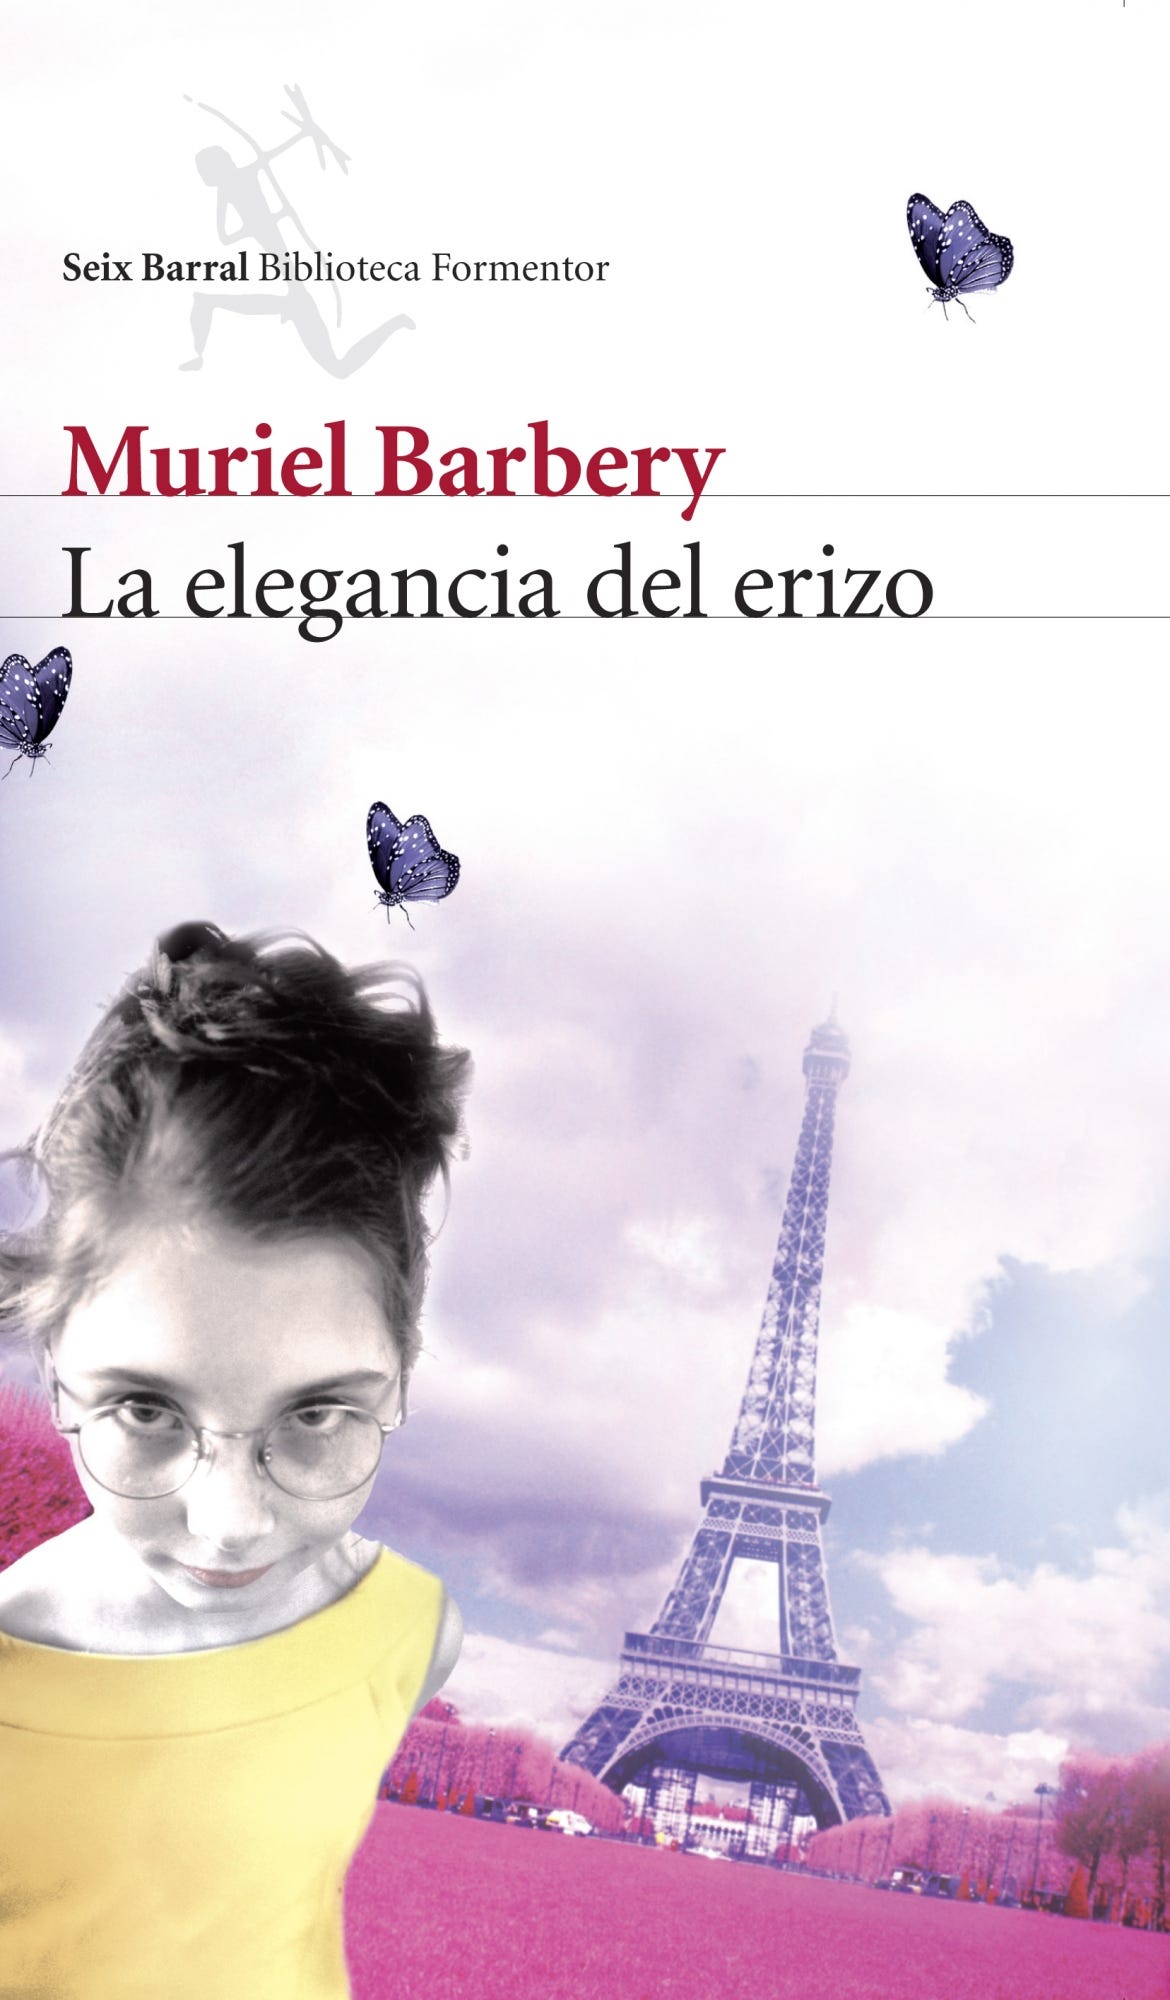 La elegancia del erizo - Muriel Barbery | PlanetadeLibros